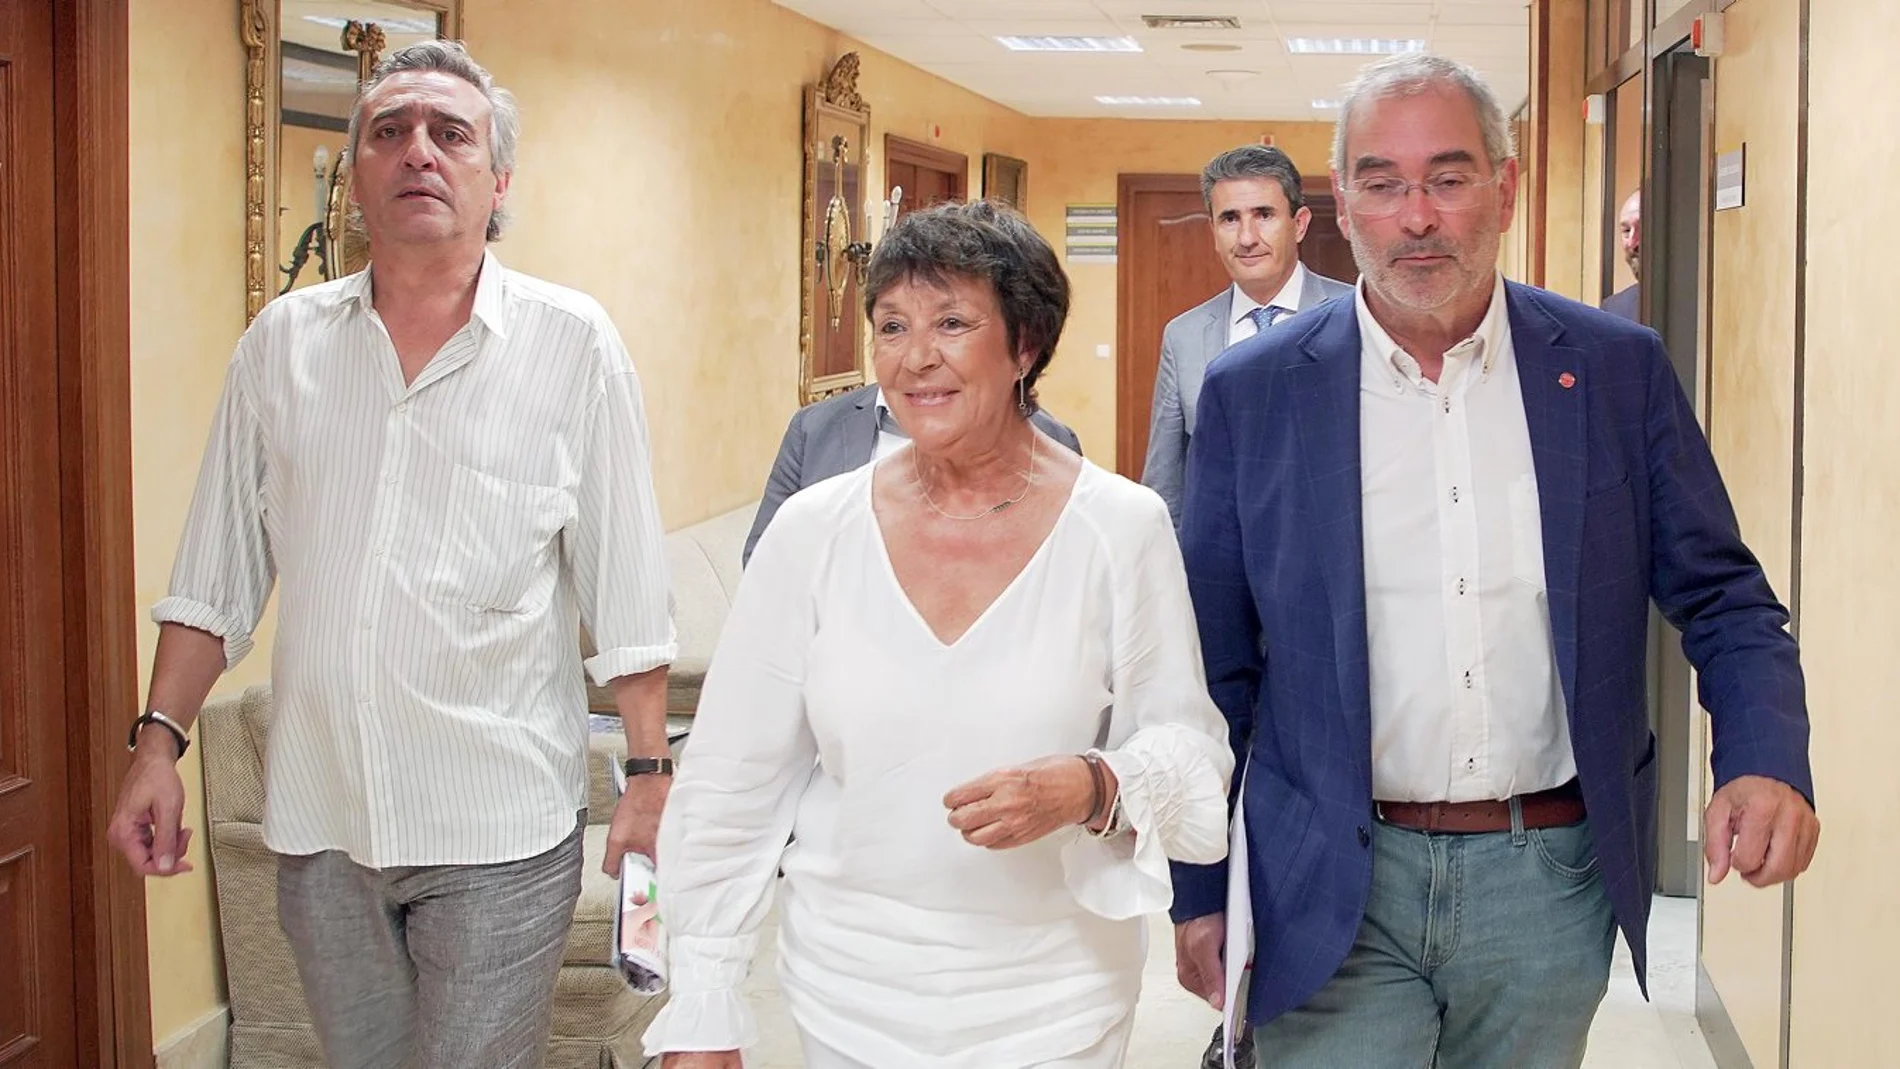 La delegada del Gobierno en Castilla y León, Mercedes Martín Juárez, presenta a los sindicatos CC OO y UGT los resultados en la Comunidad autónoma del Plan Director por un Trabajo Digno que entró en vigor hace un año